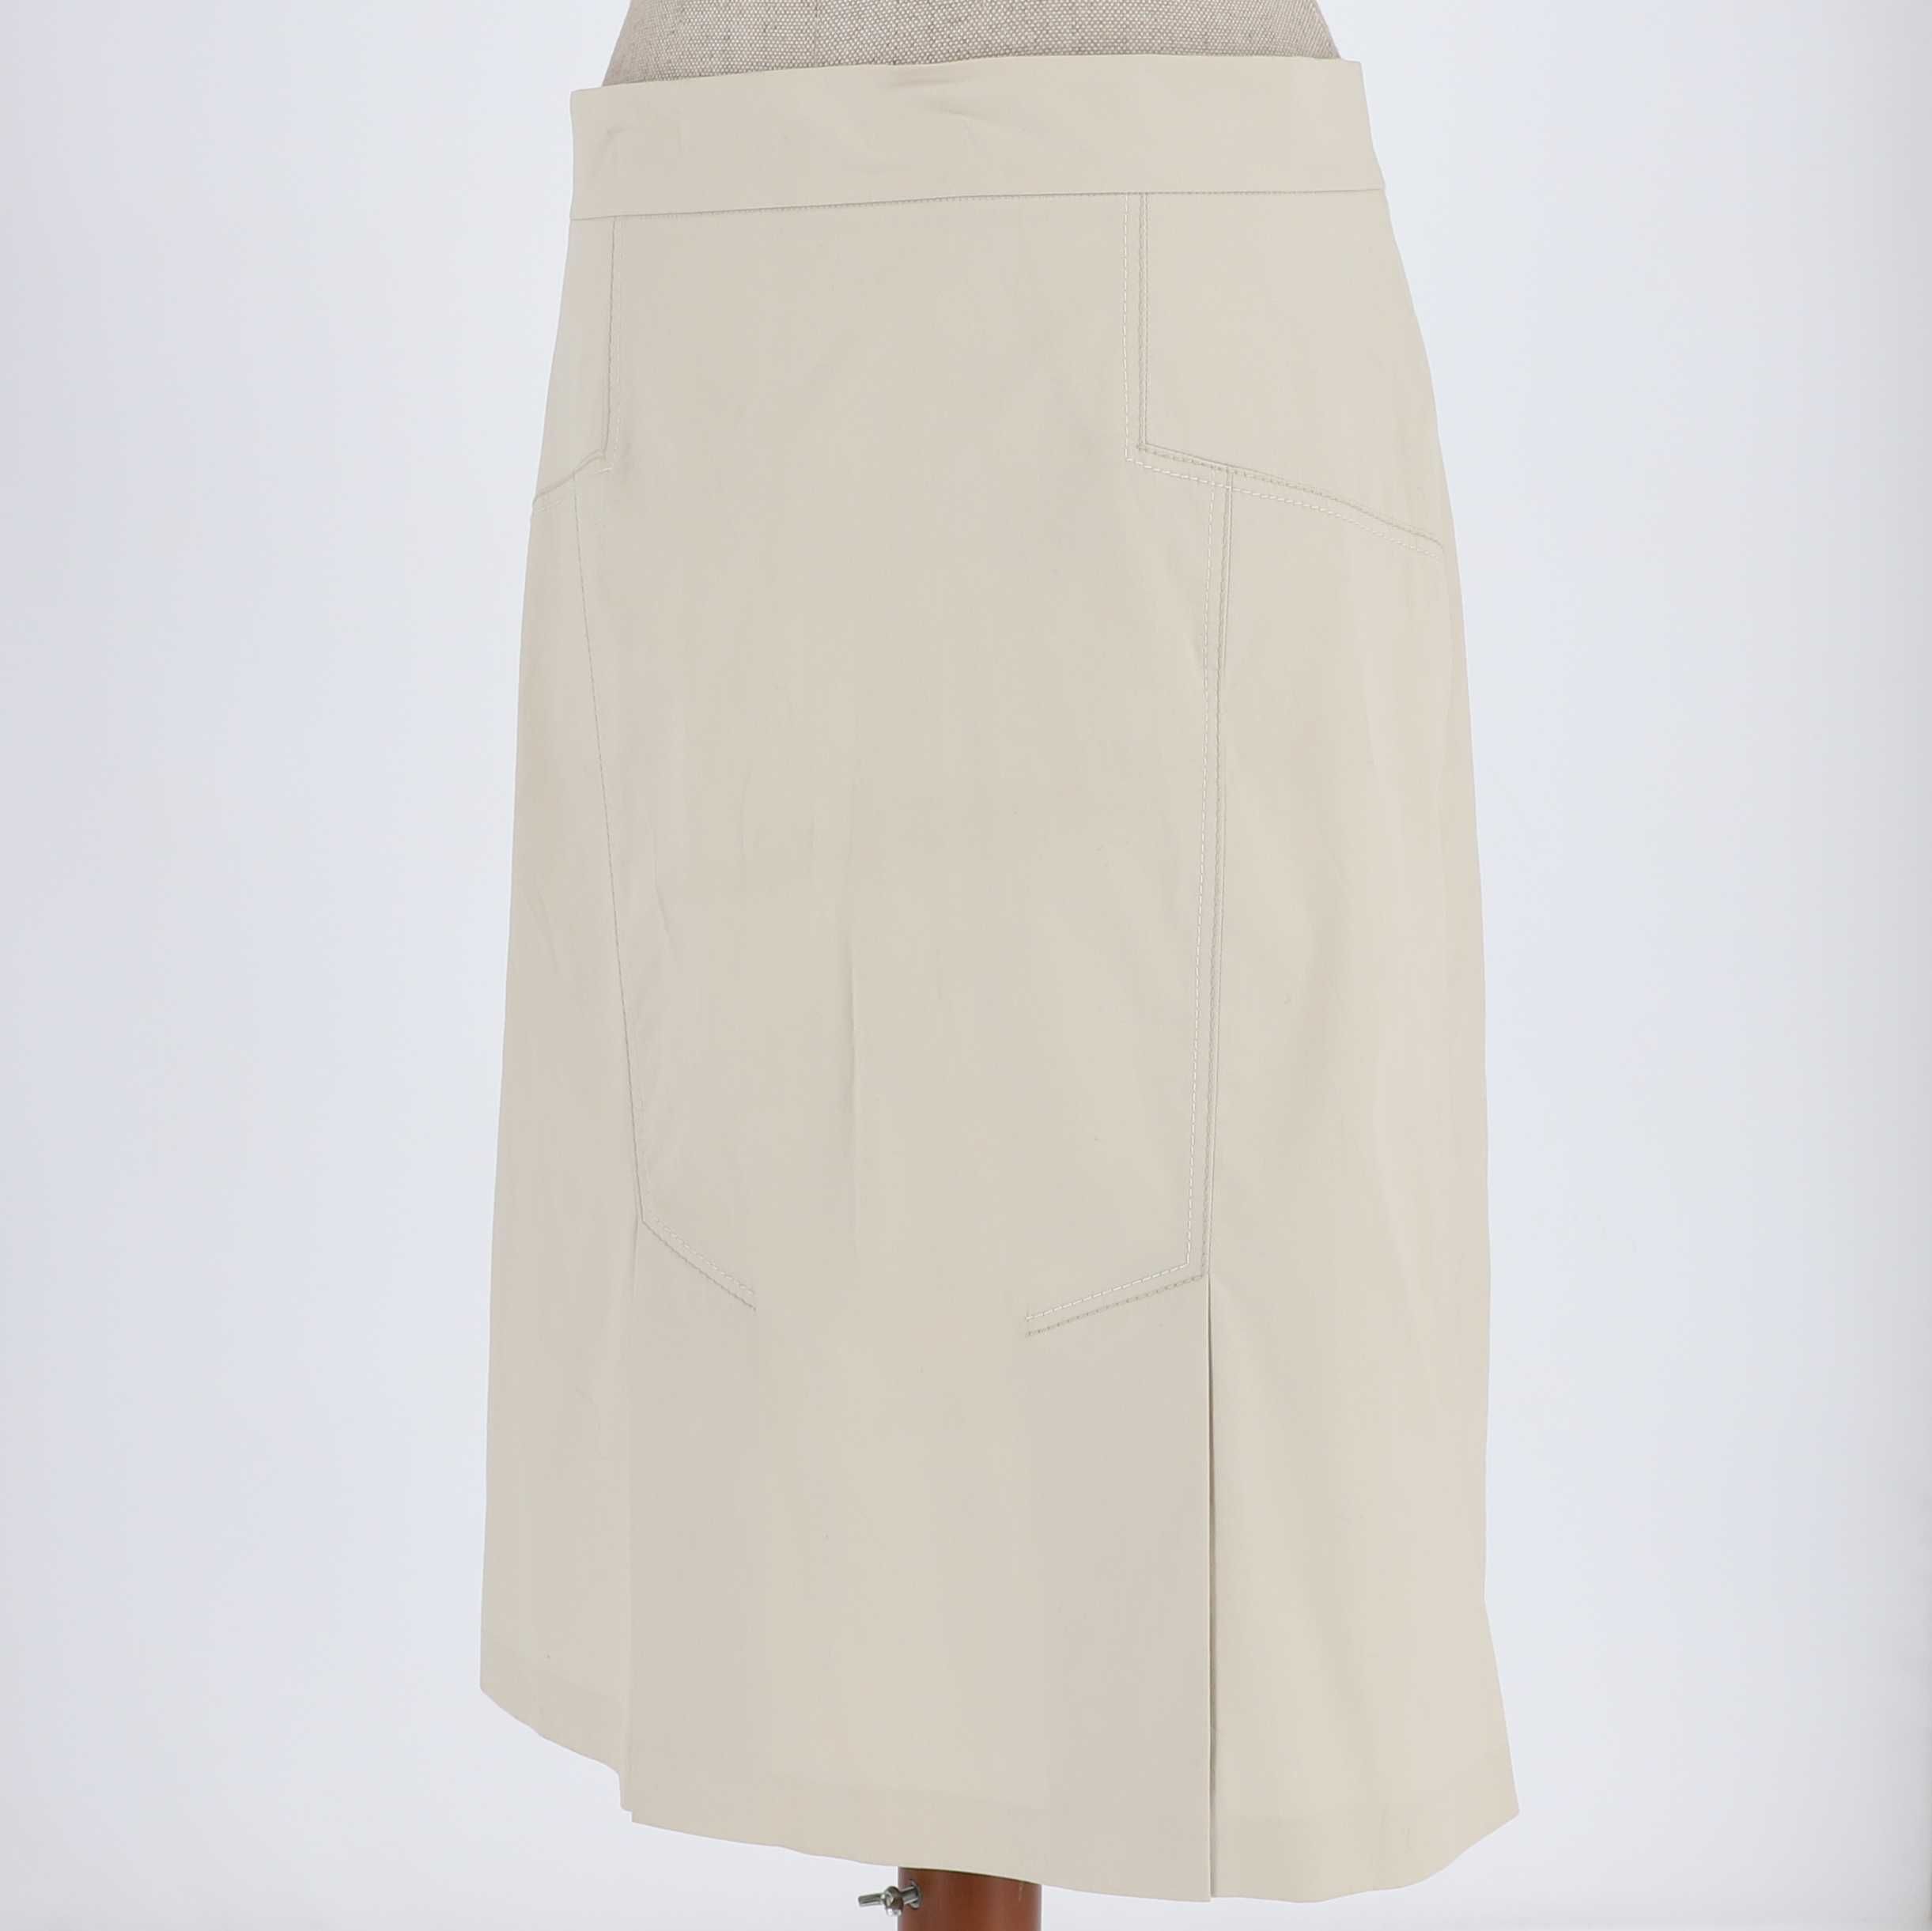 Beżowa spódnica marki Caterina Leman, rozmiar 46